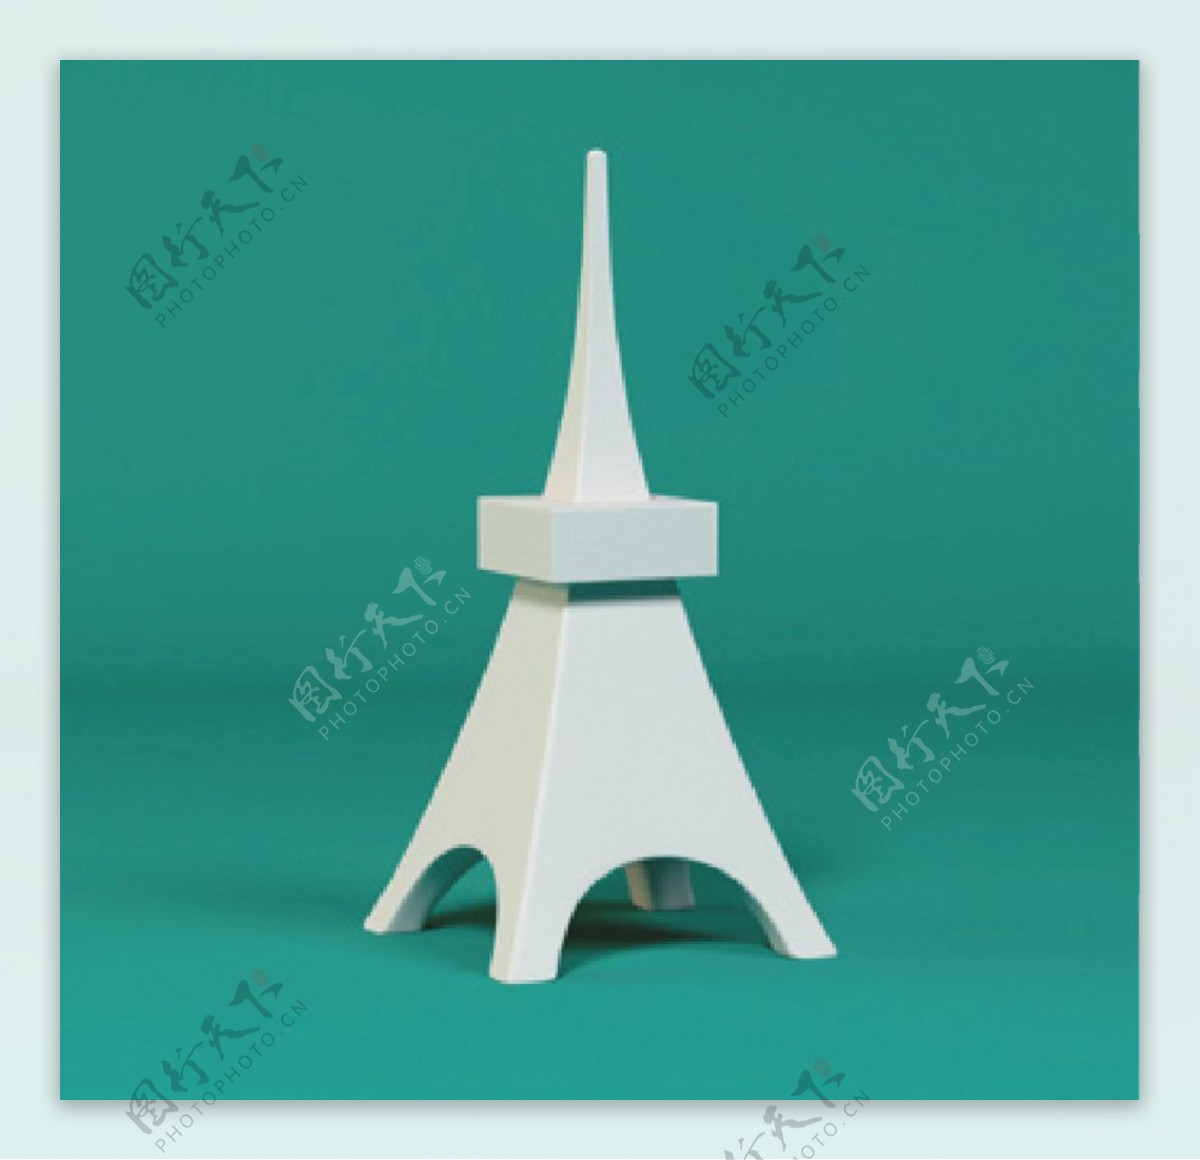 埃菲尔铁塔玩具模型图片